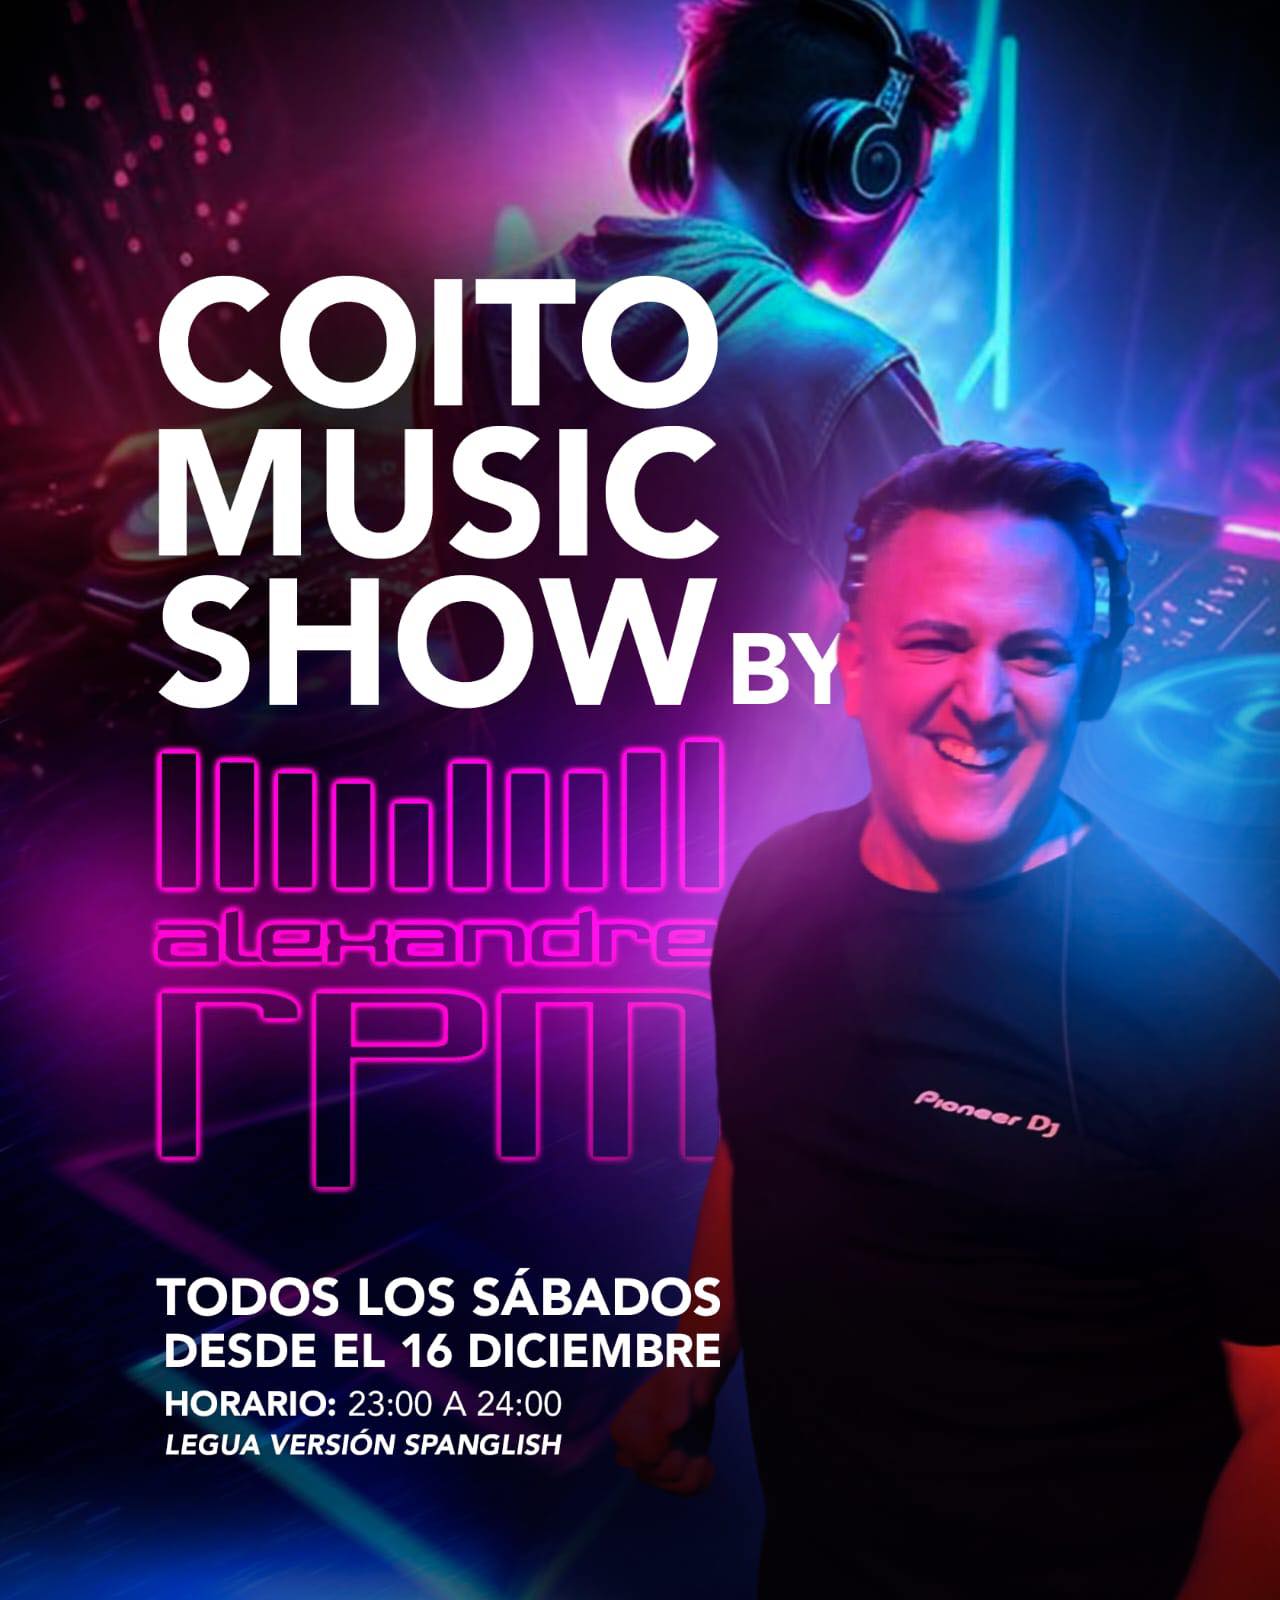 Coito Music Show